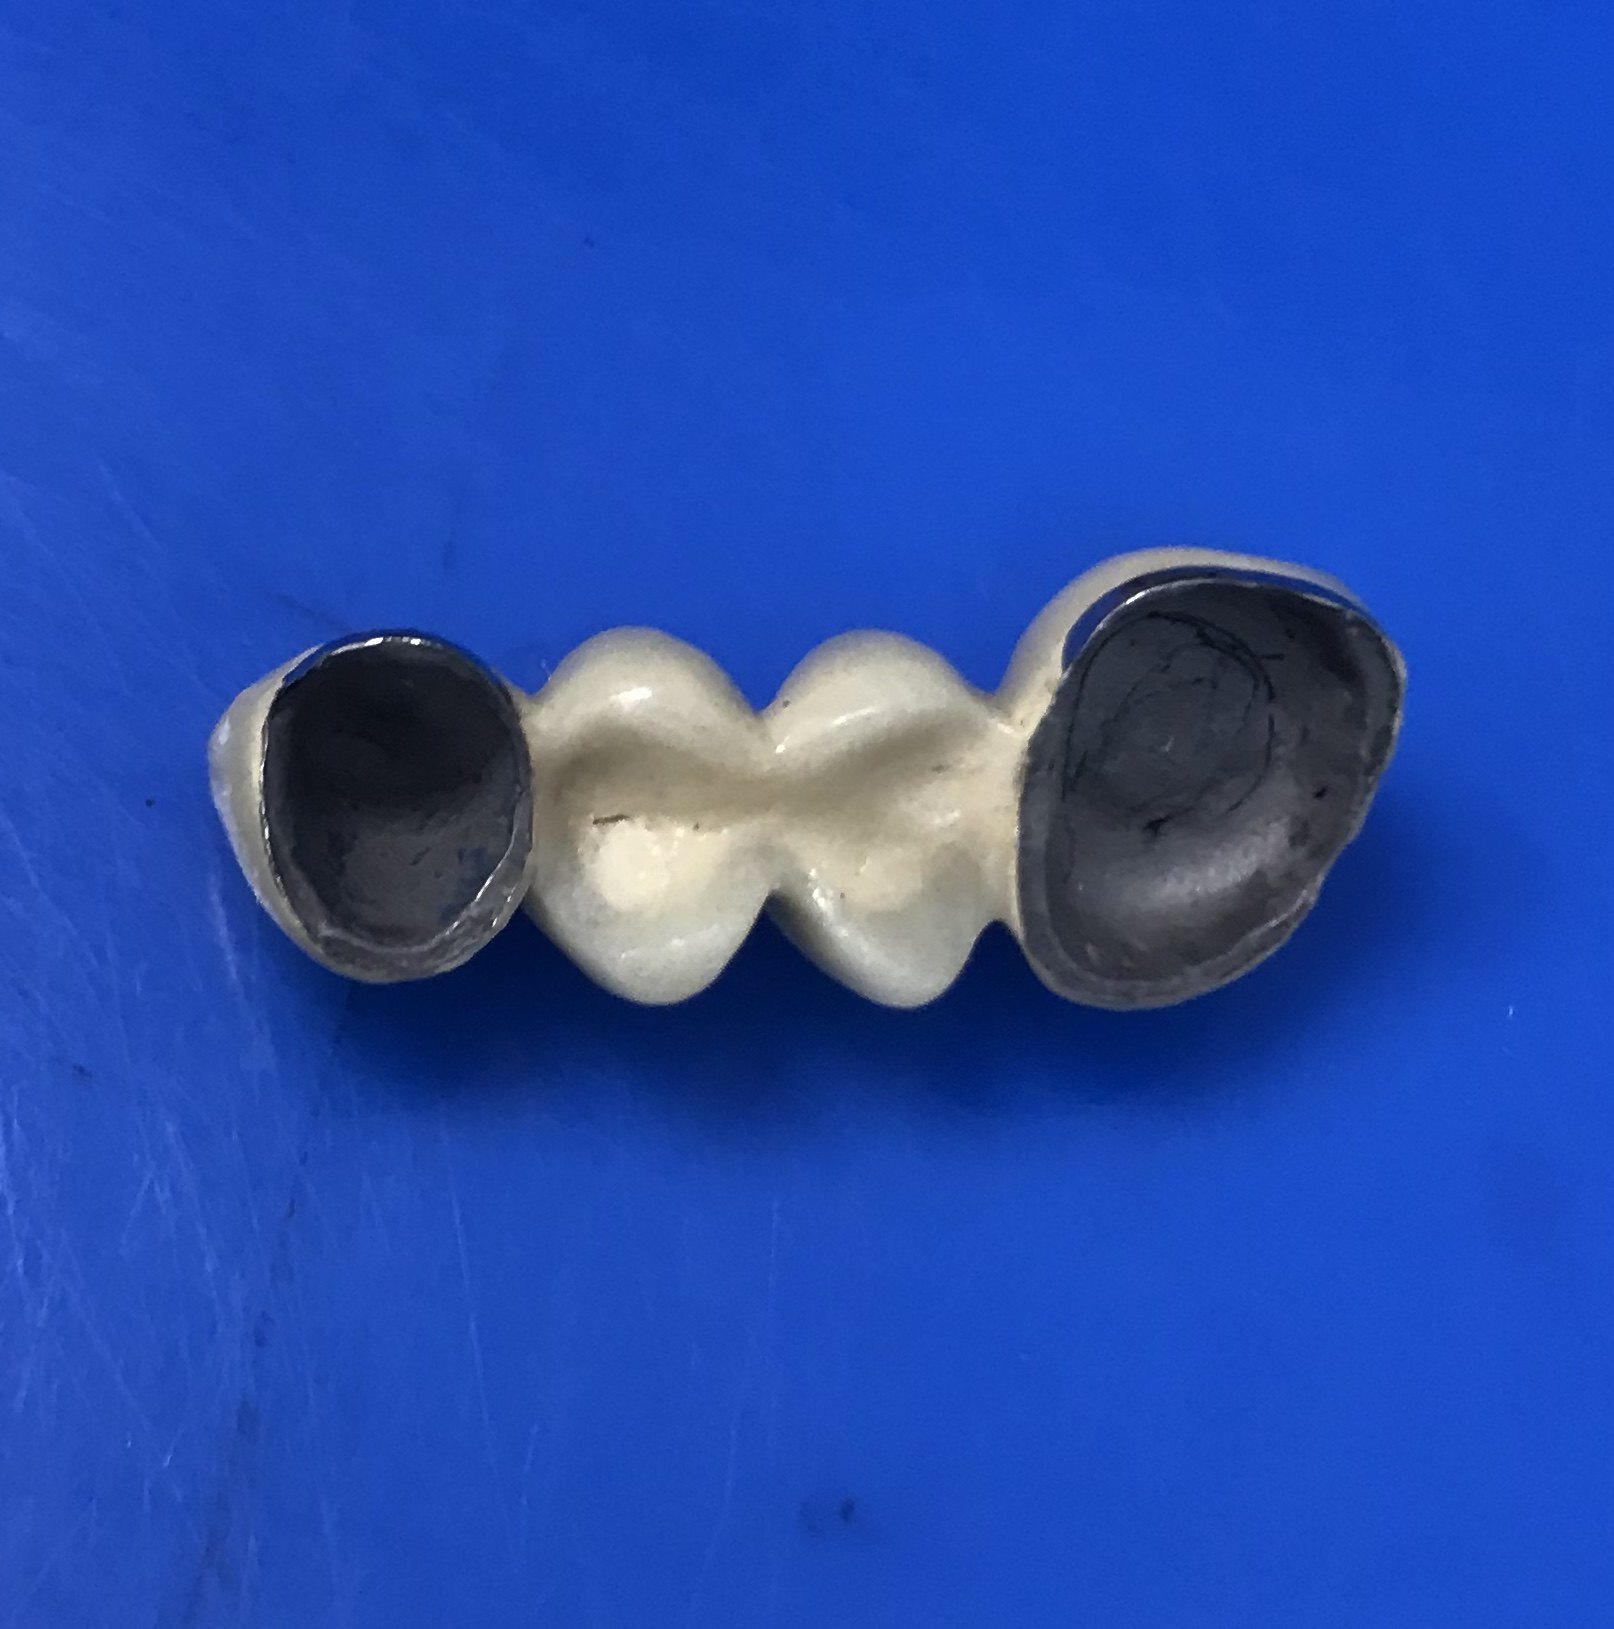 一般做的牙冠要比缺少的牙齿要多两颗固定桥,需要将两边正常牙齿磨小